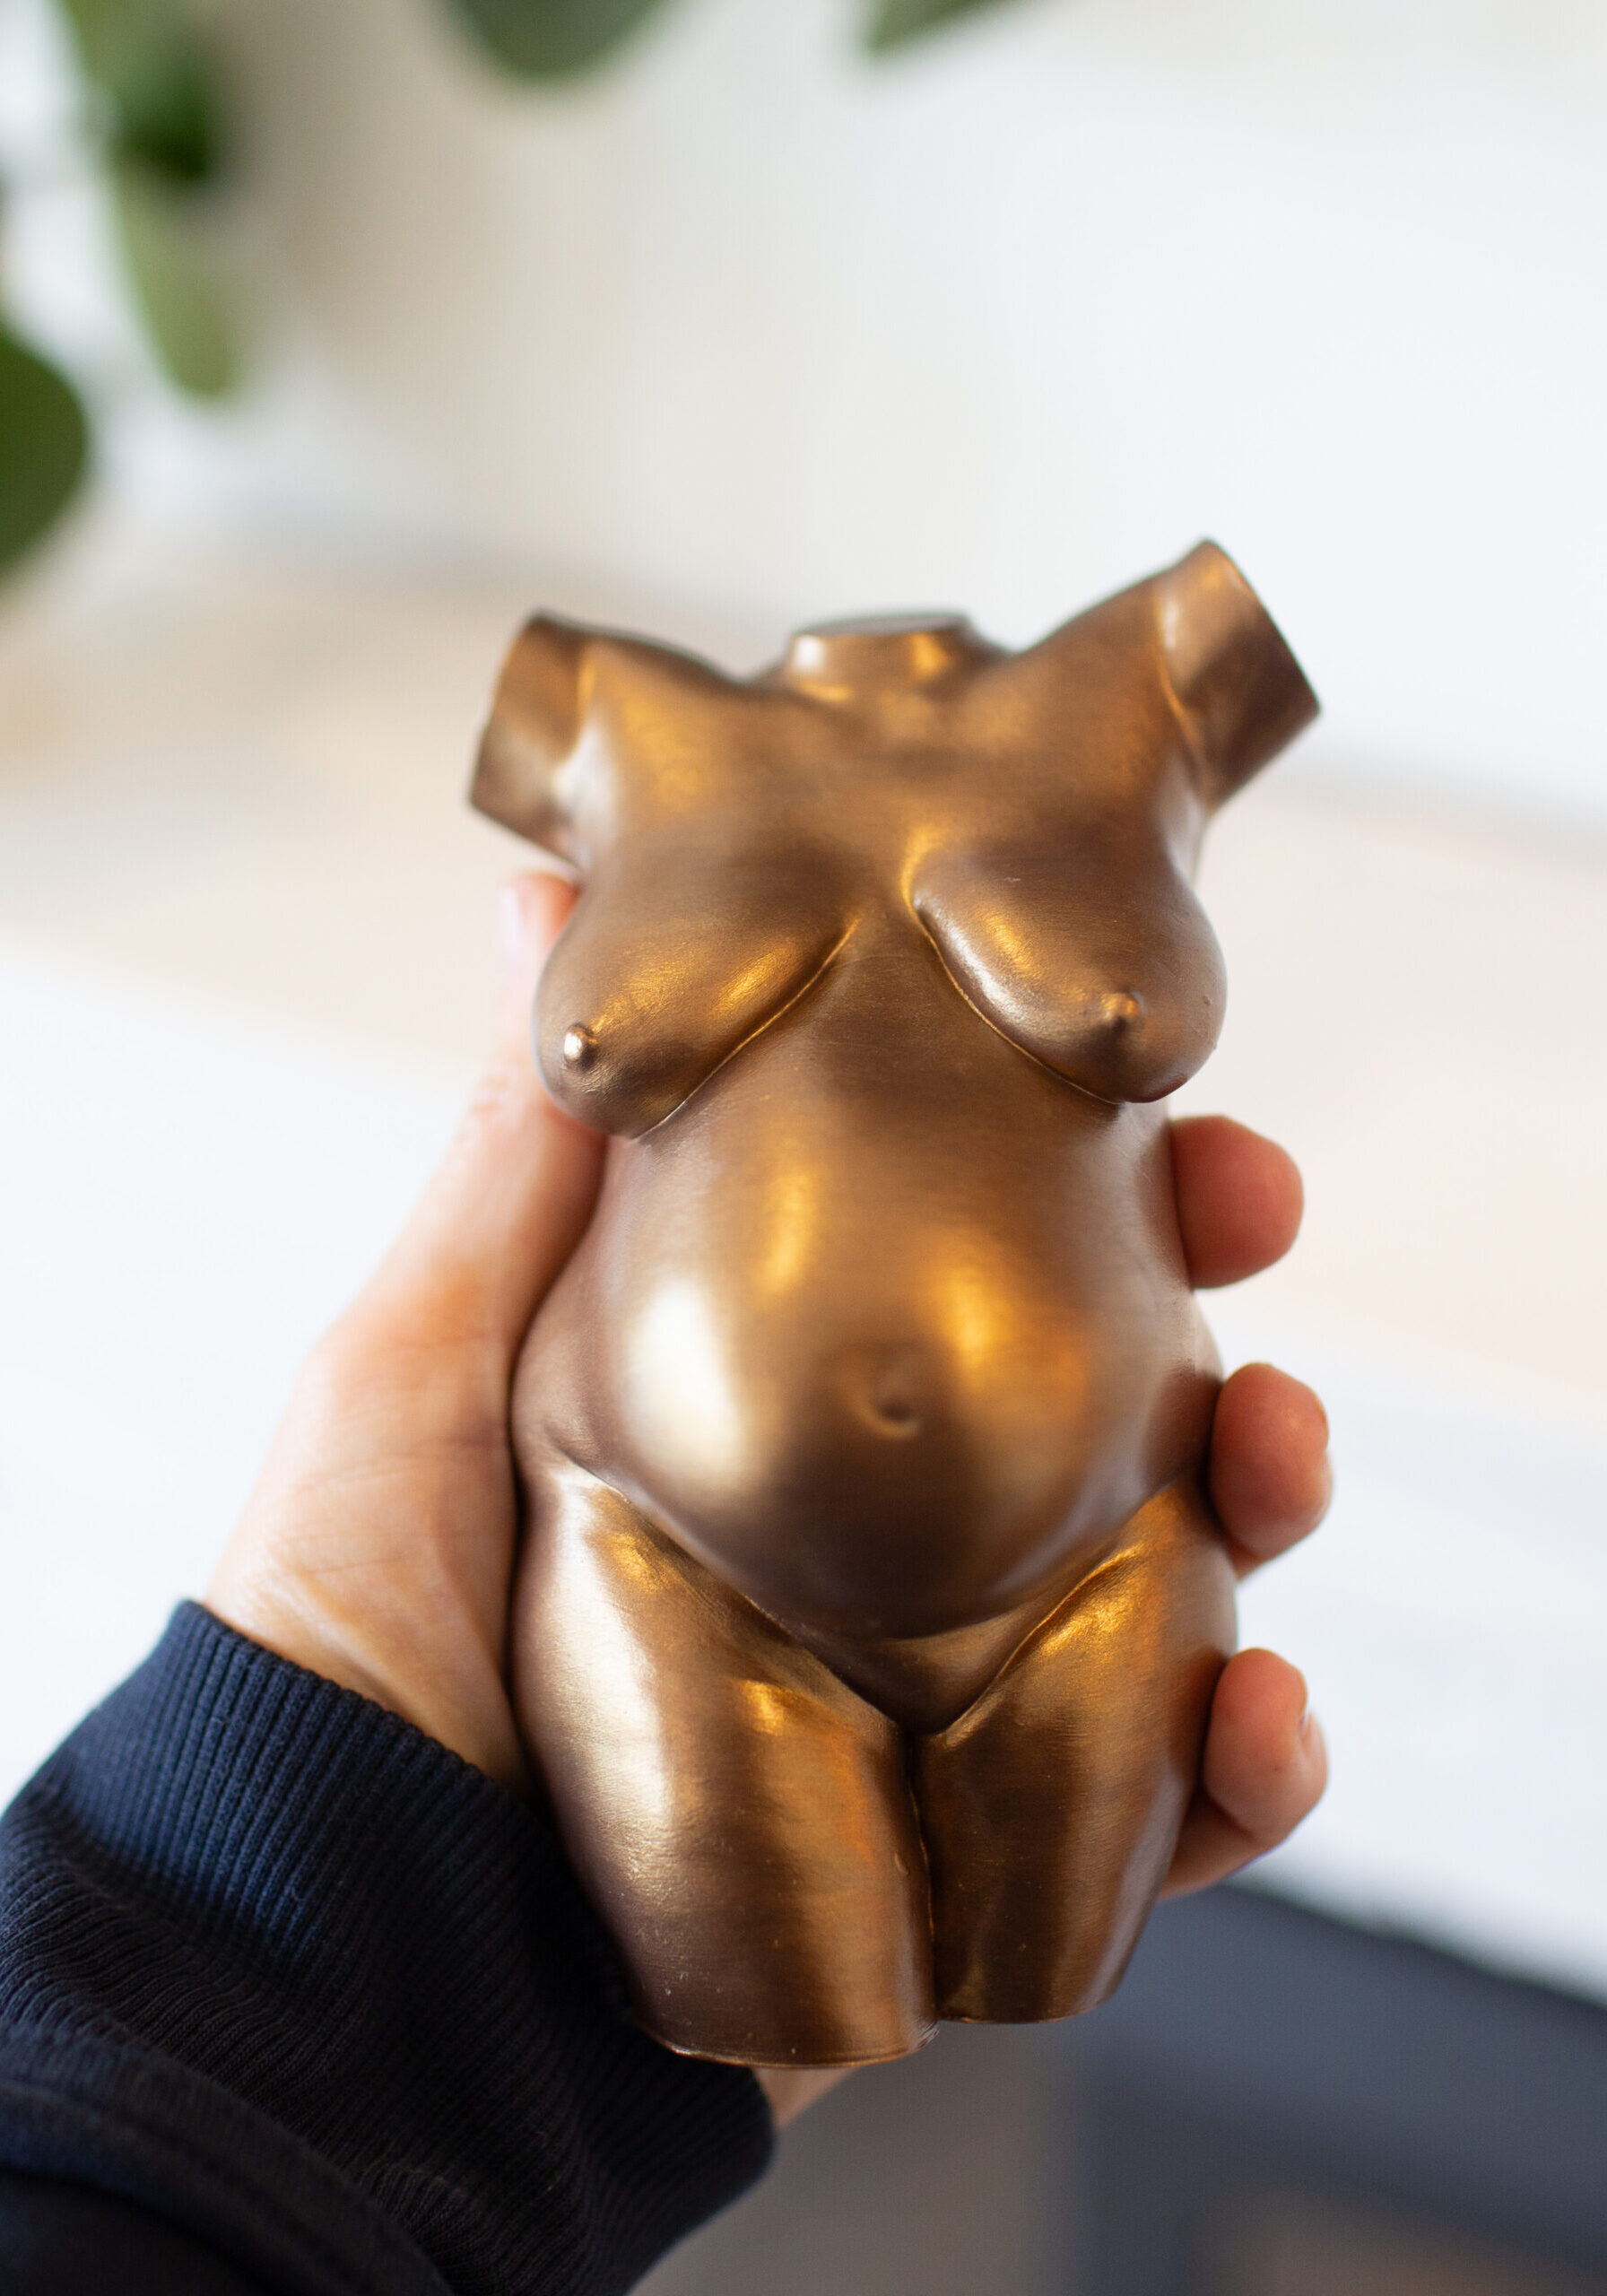 bronze_looko_berspoke_pregnancy_sculpture